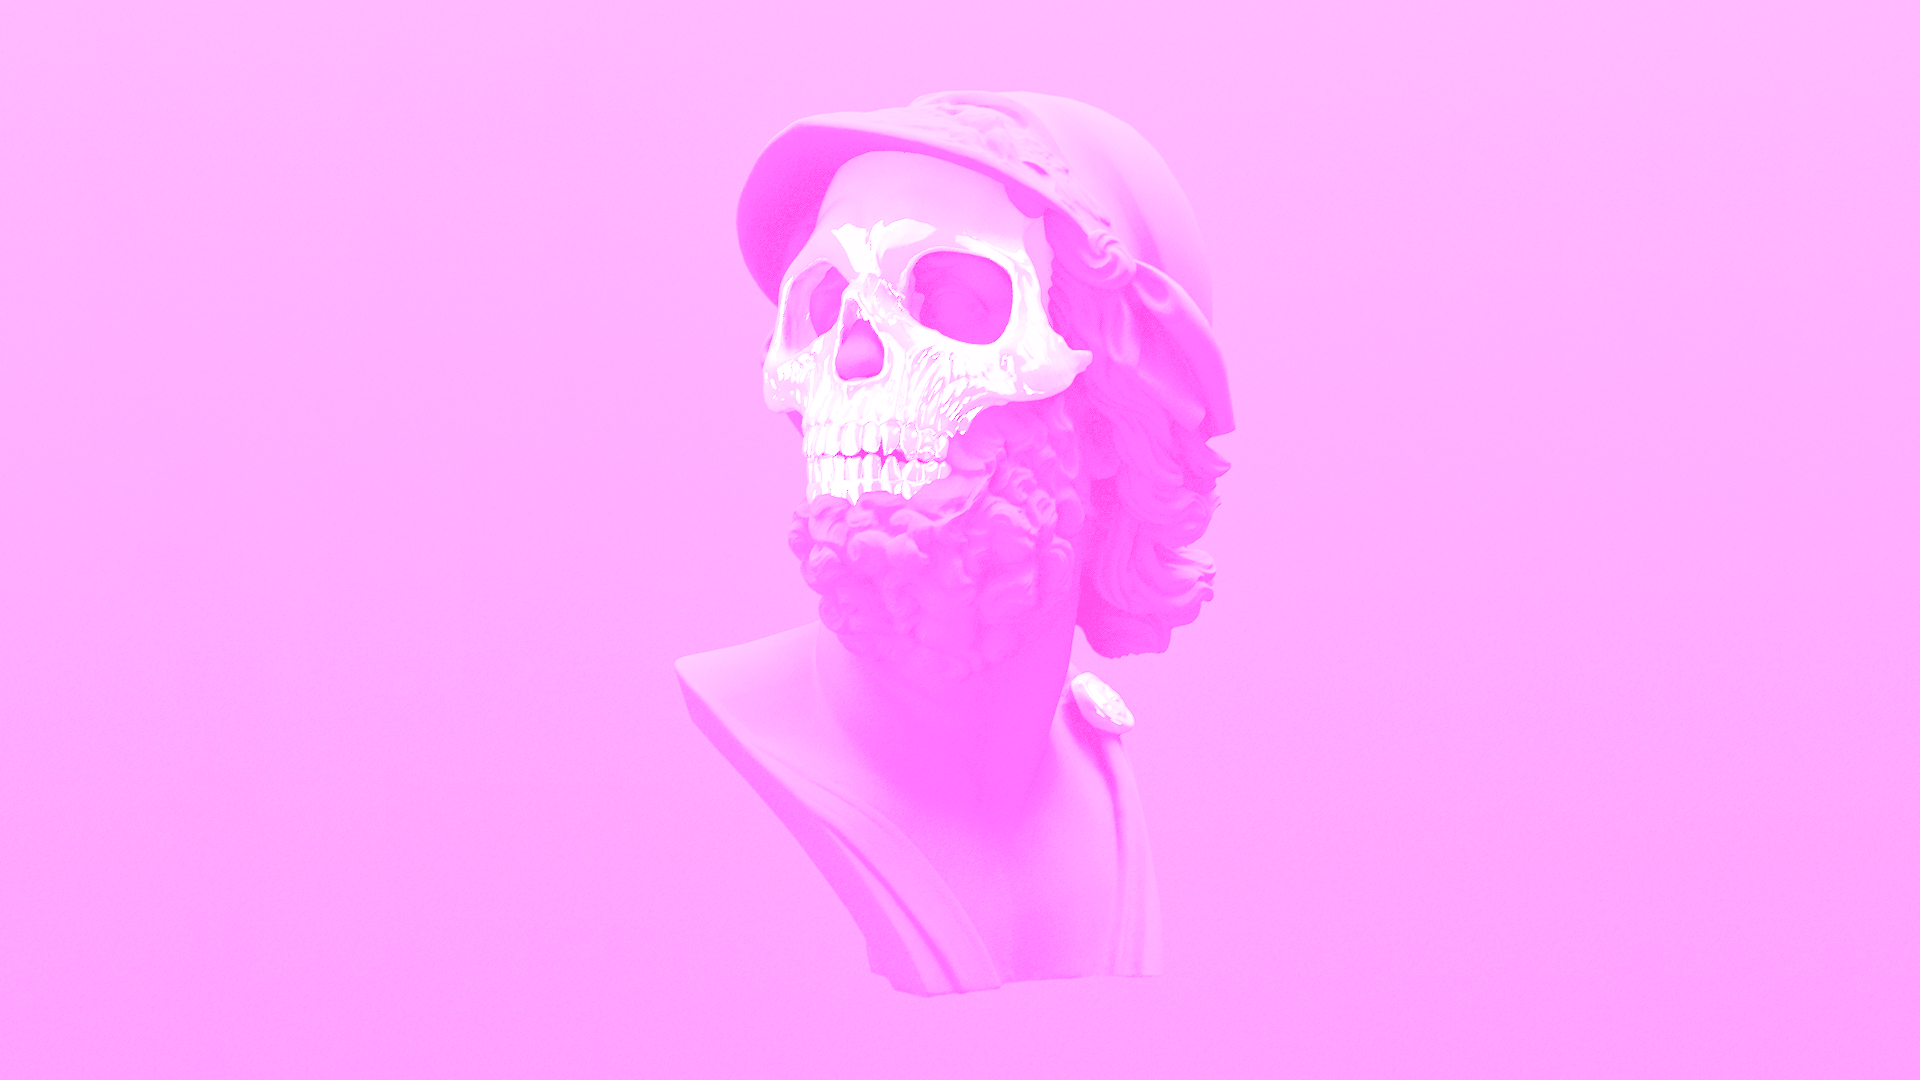 General 1920x1080 vaporwave pink skeleton skull pink background video games